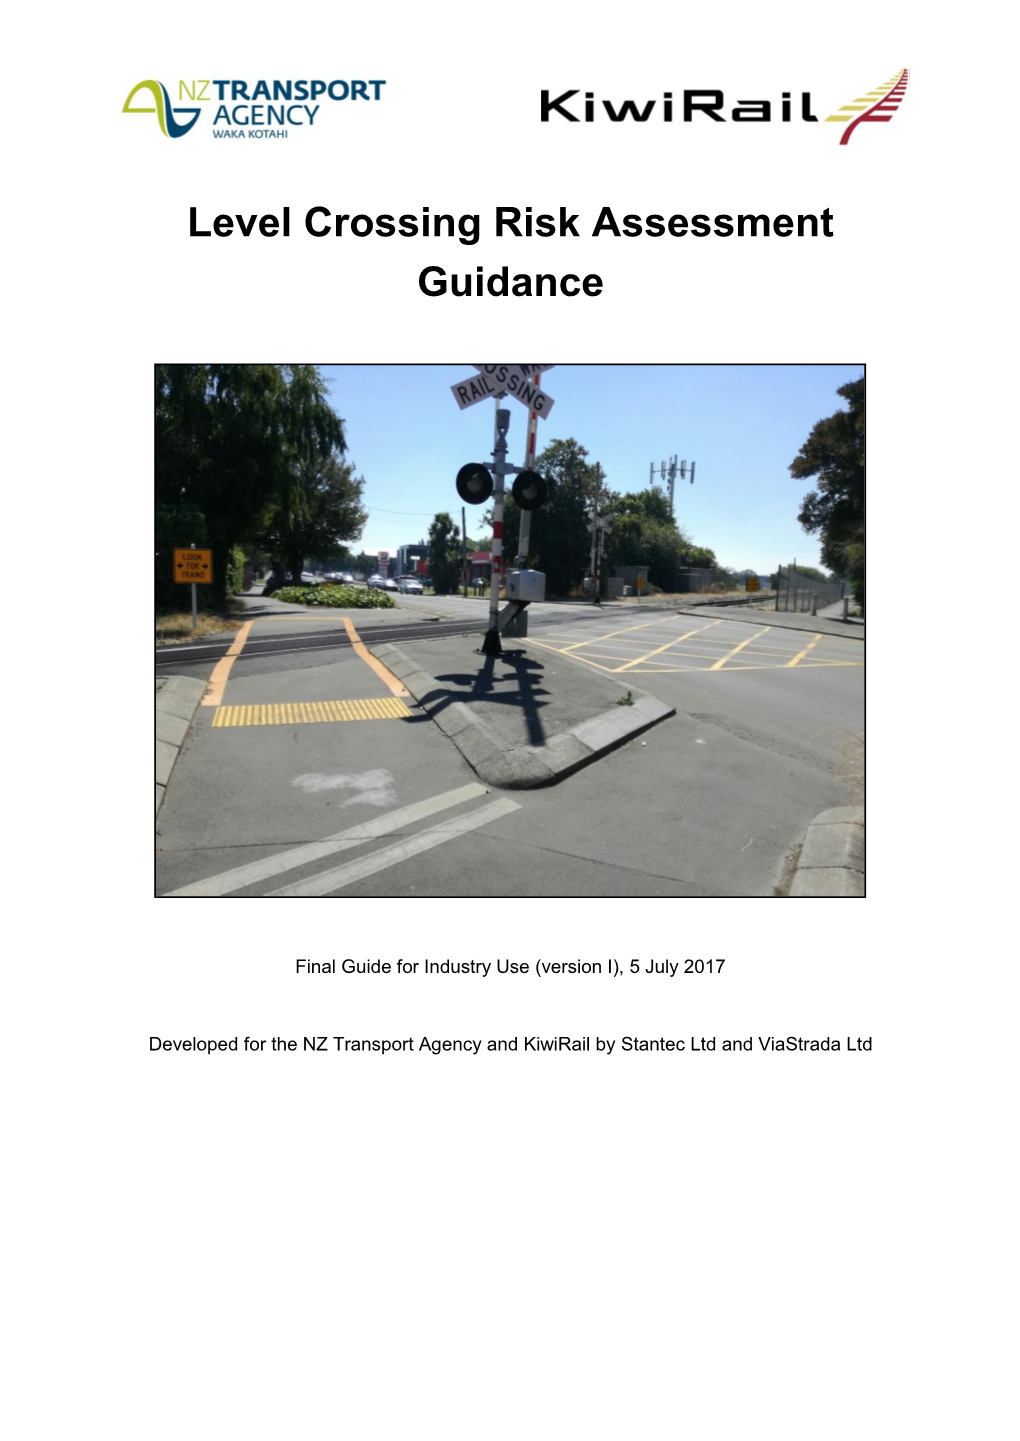 Level Crossing Risk Assessment Guidance